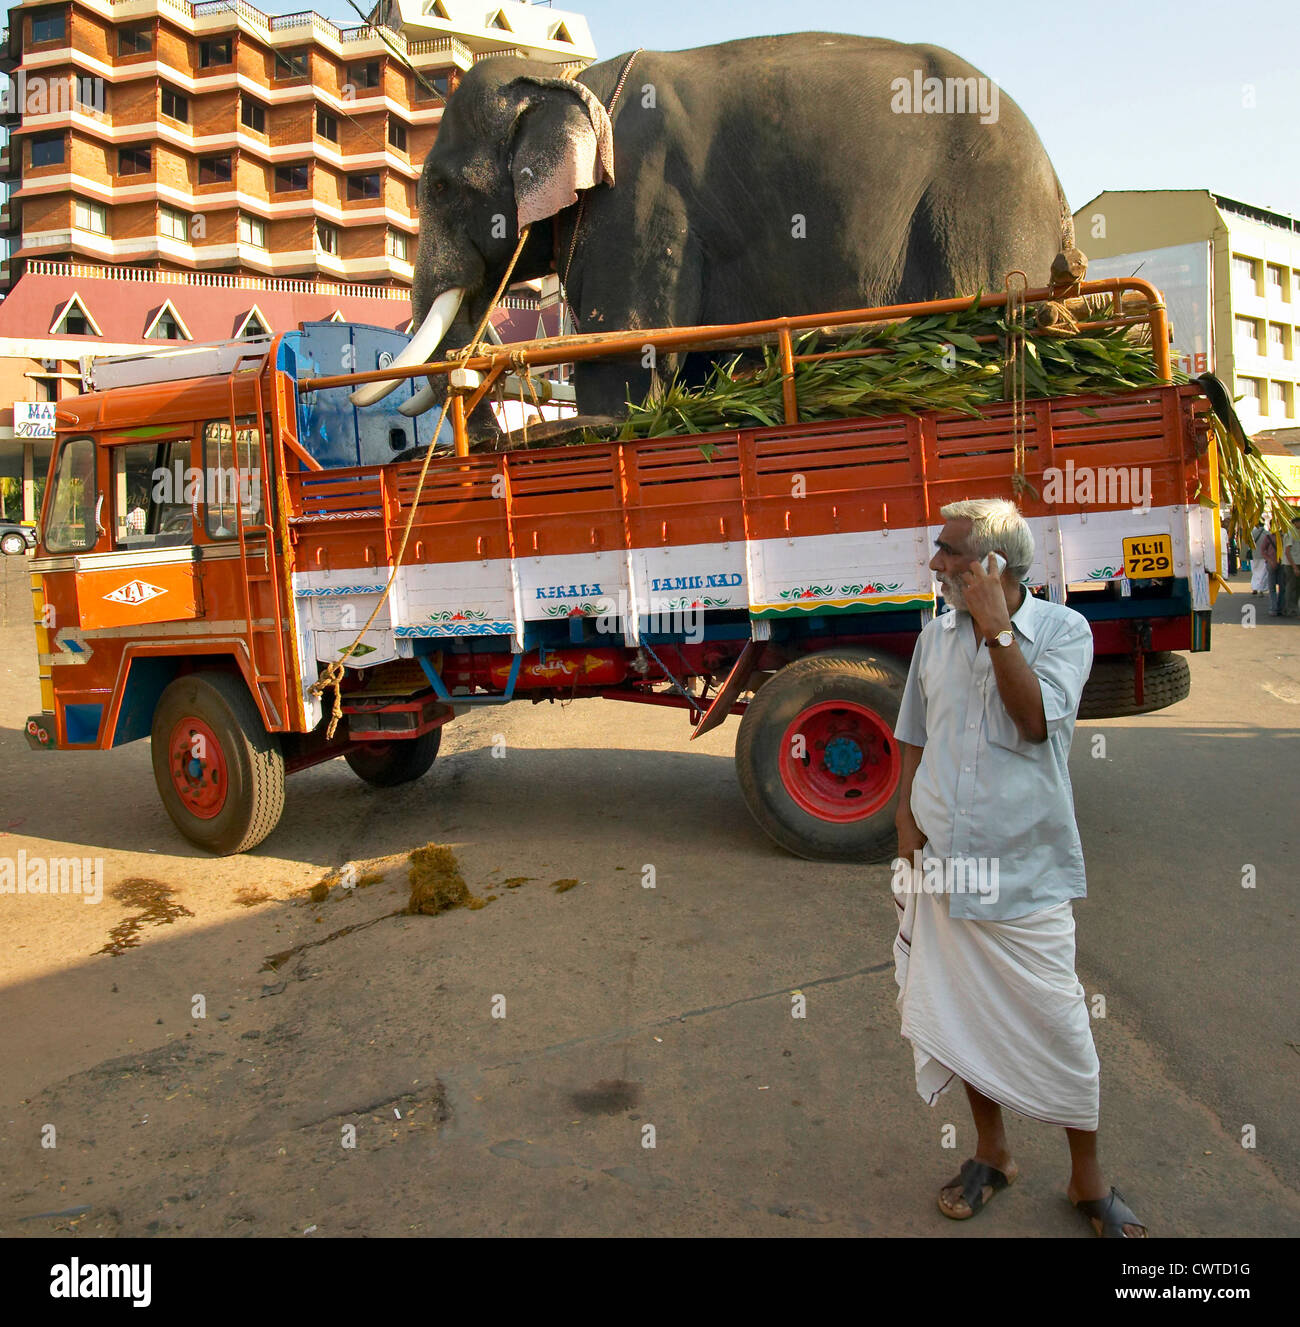 un-elefante-llega-en-un-camion-para-el-festival-en-calicut-india-y-un-hombre-con-telefono-movil-cwtd1g.jpg